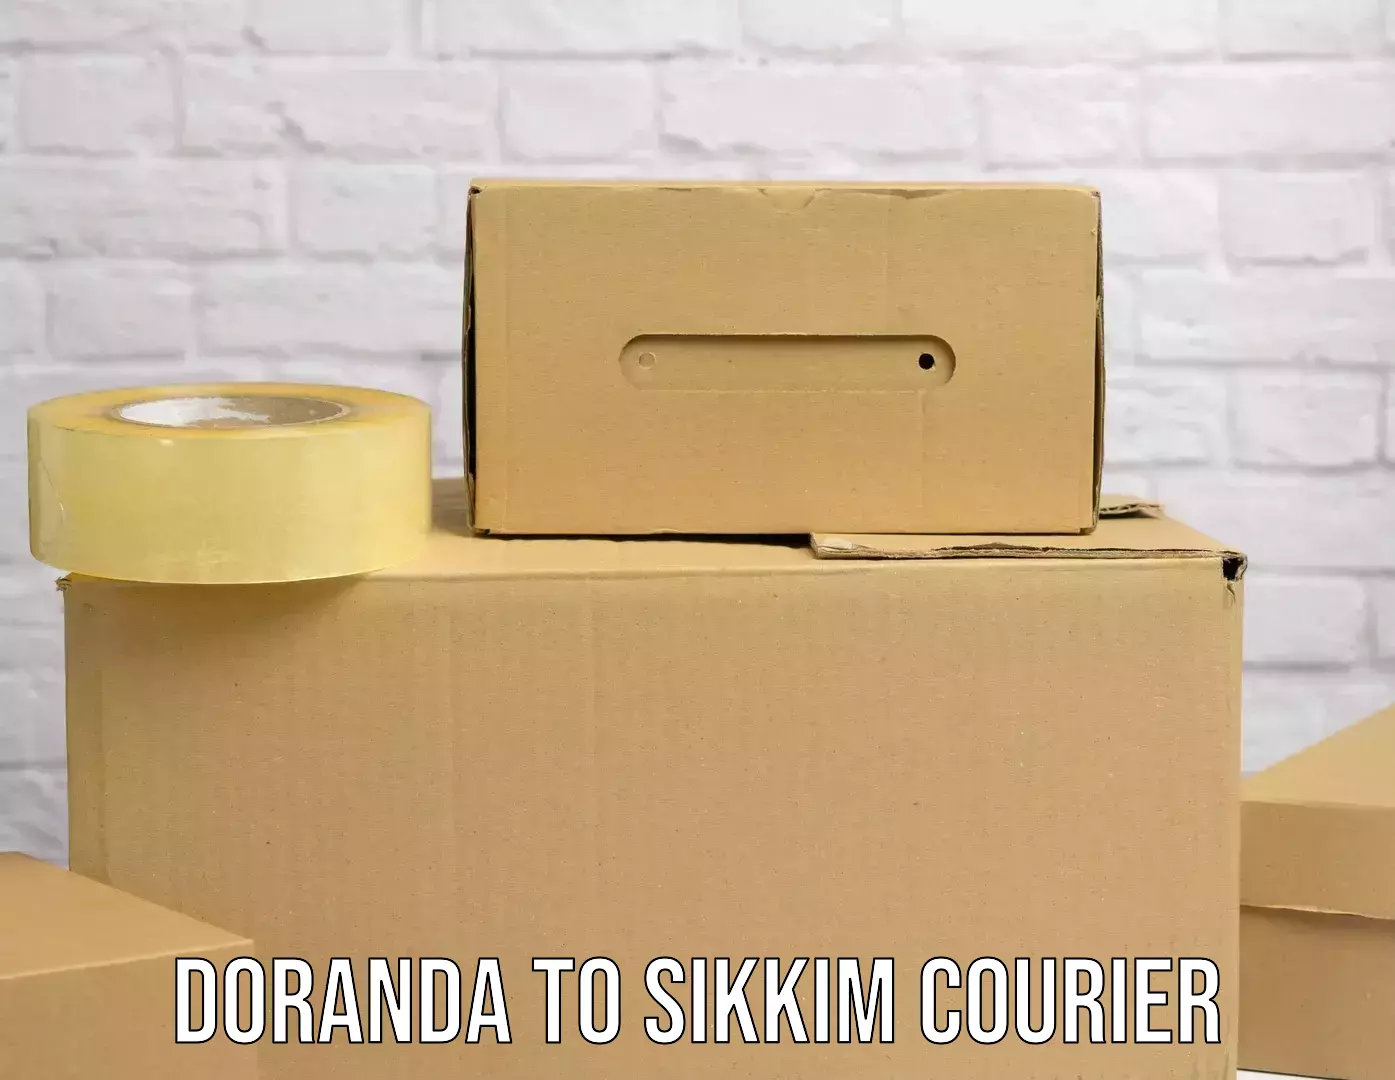 Express courier facilities Doranda to Sikkim